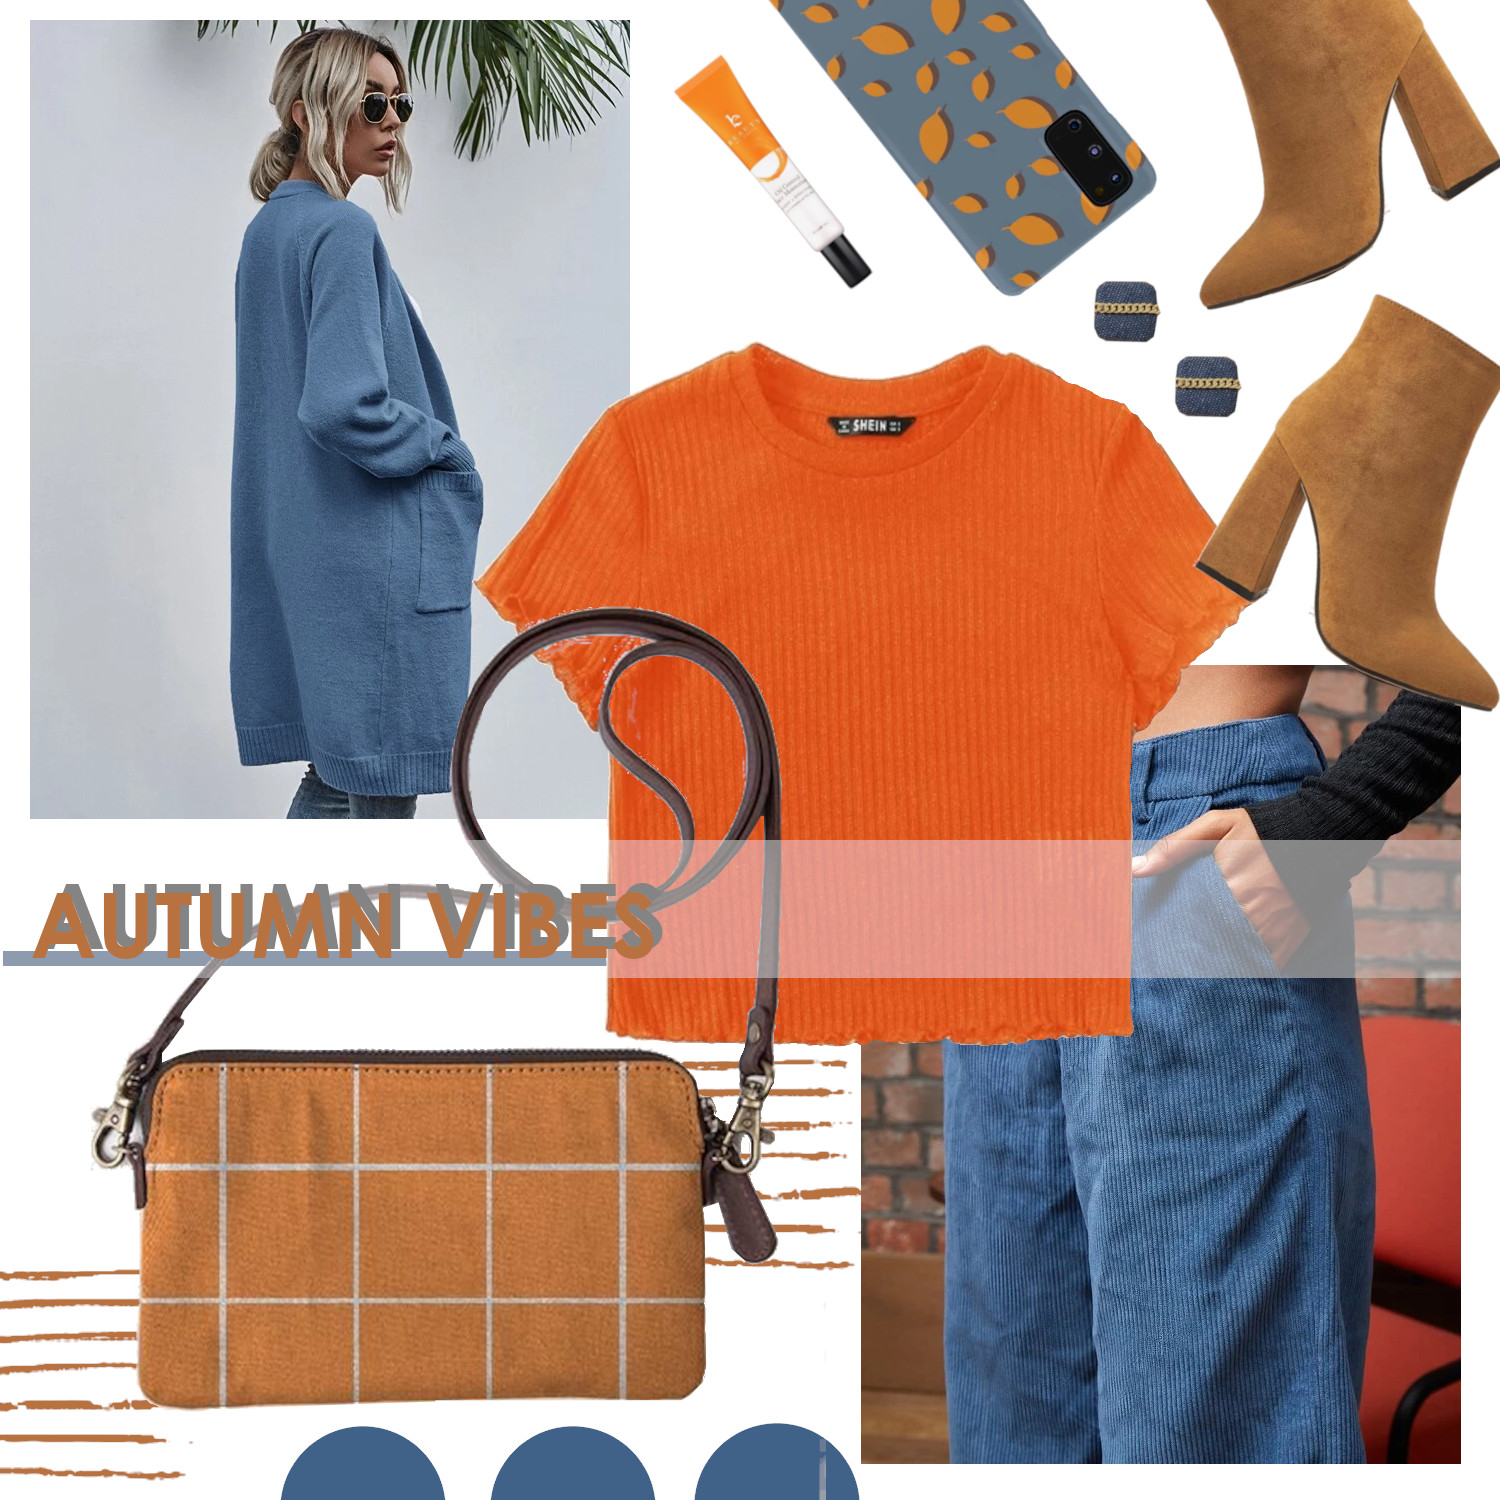 OOTD Blue vs orange autumn vibes  fashion layout by Joanna_ARTbyJWP |  findawaybyjwp.com